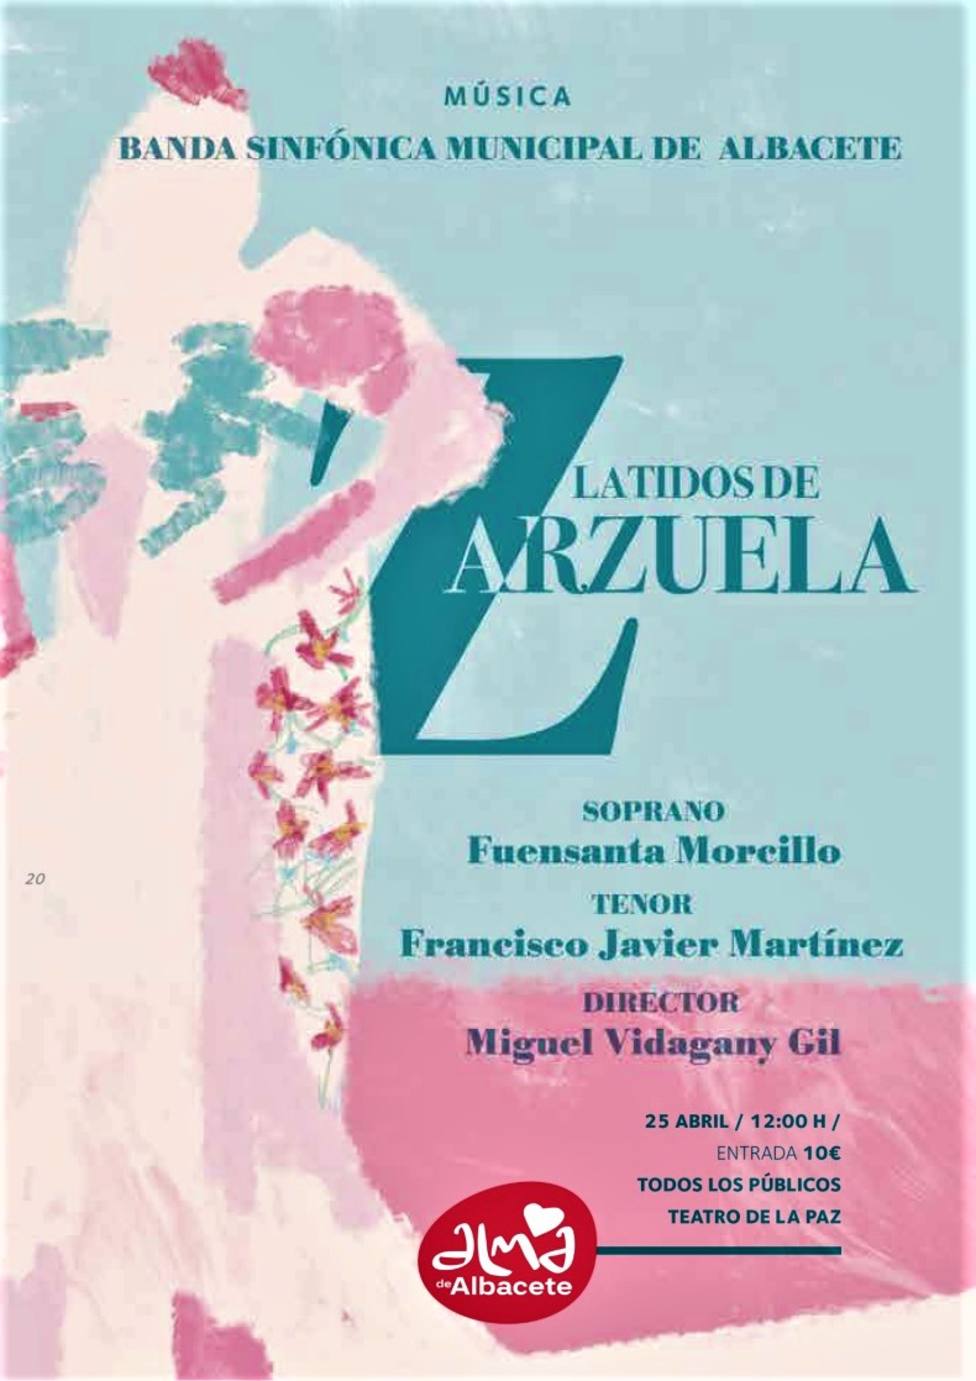 “Latidos de Zarzuela” el domingo a mediodía en el Teatro de la Paz